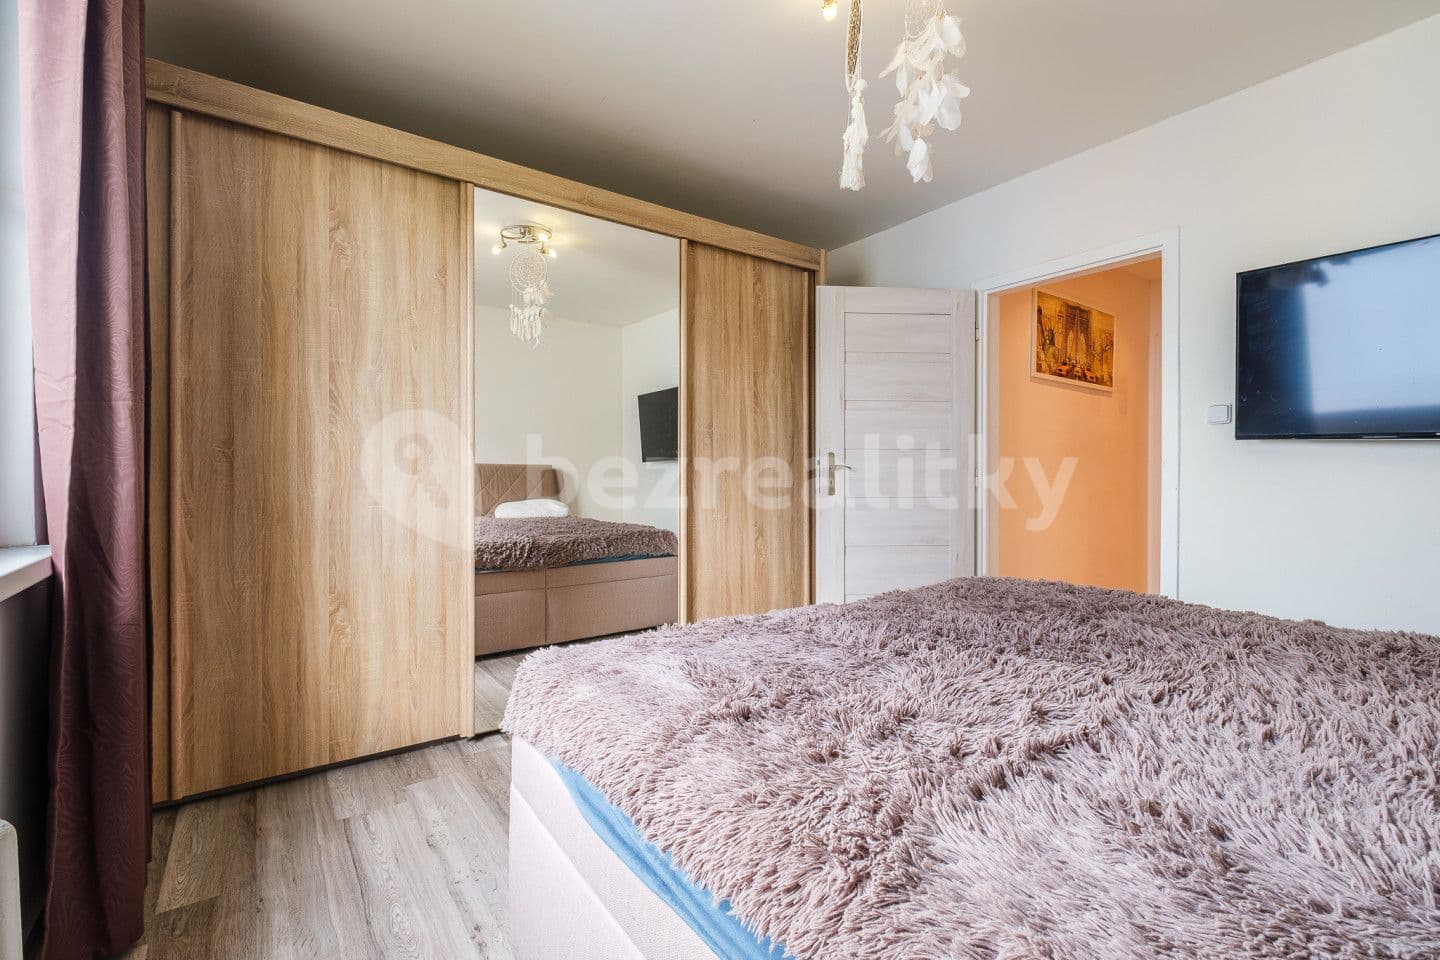 4 bedroom flat for sale, 104 m², Na konečné, Teplice, Ústecký Region